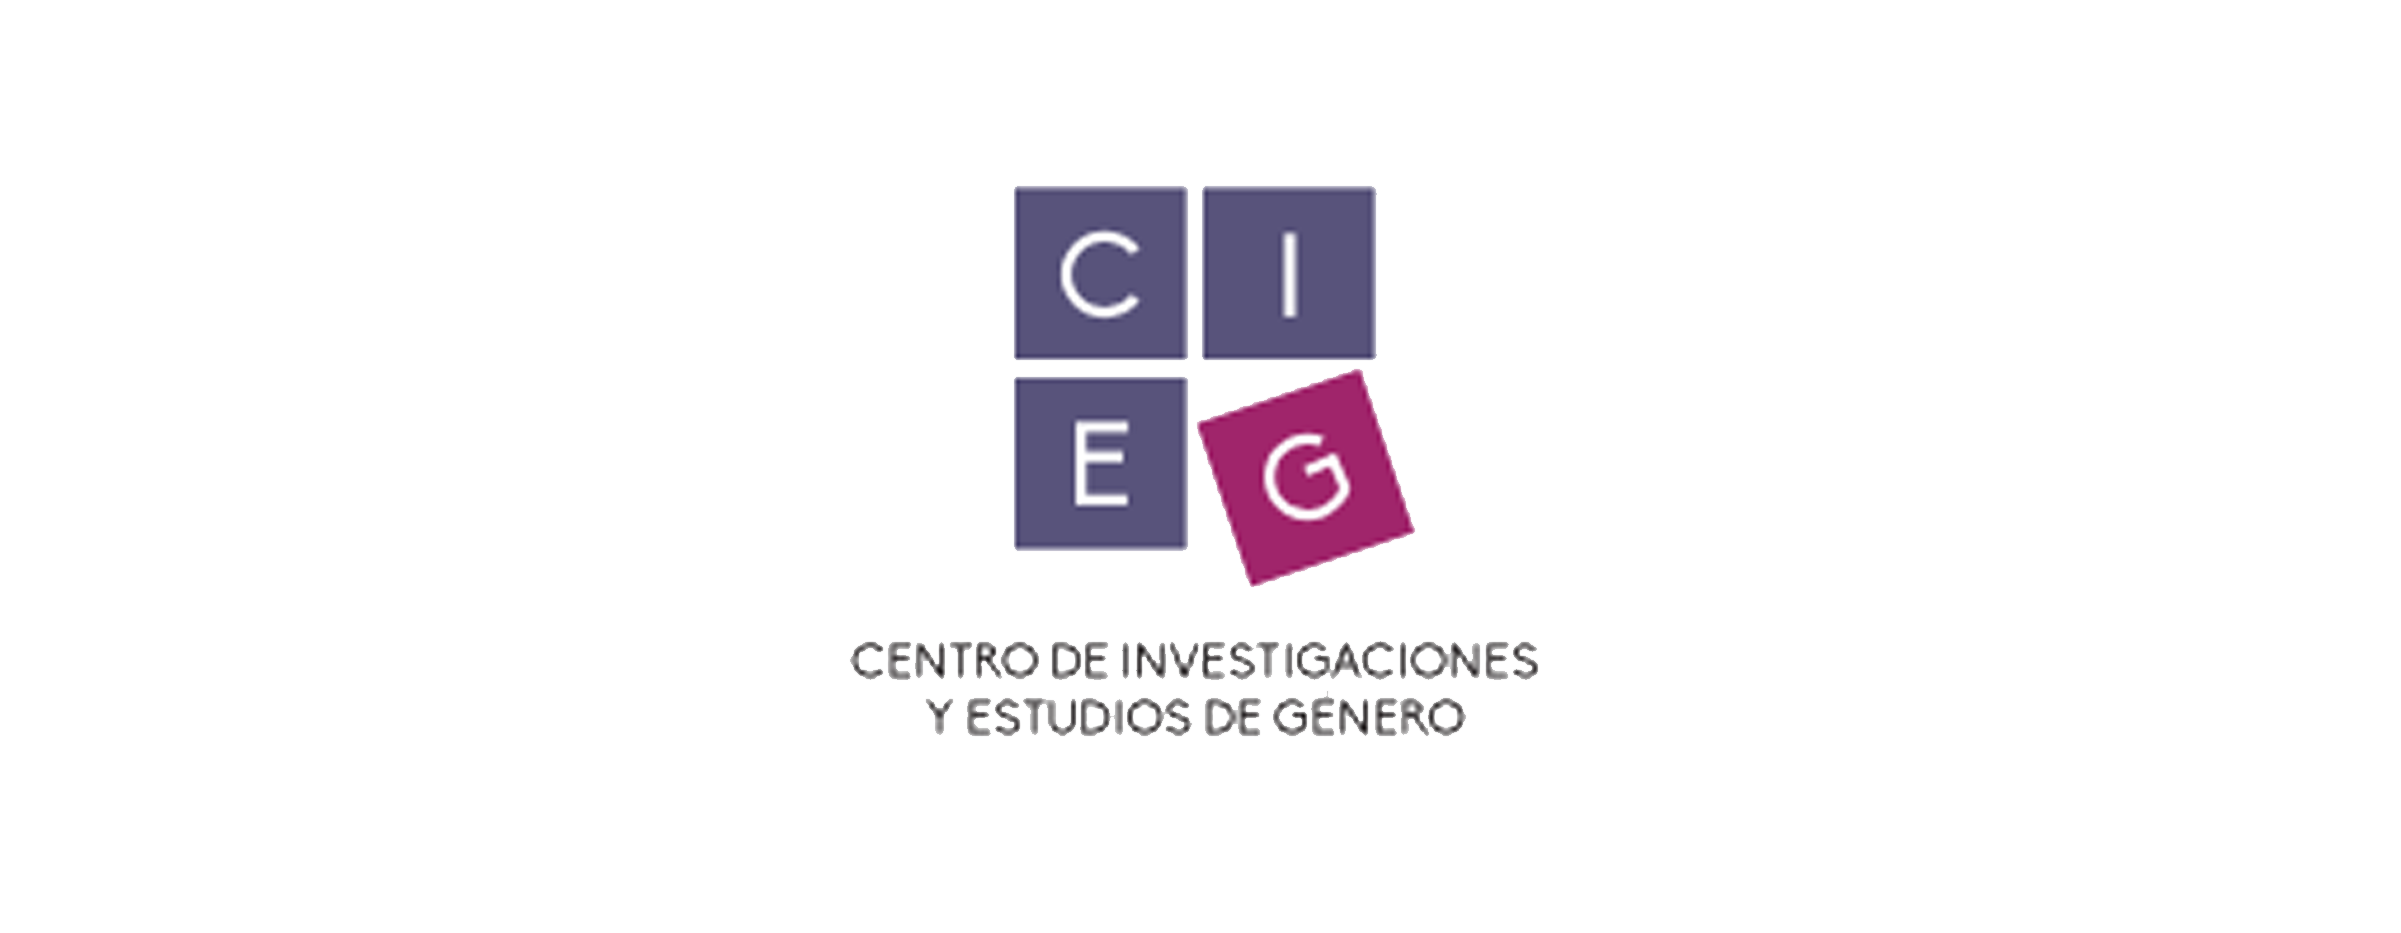 Logo del Centro de Investigaciones y estudios de género de la UNAM (CIEM)